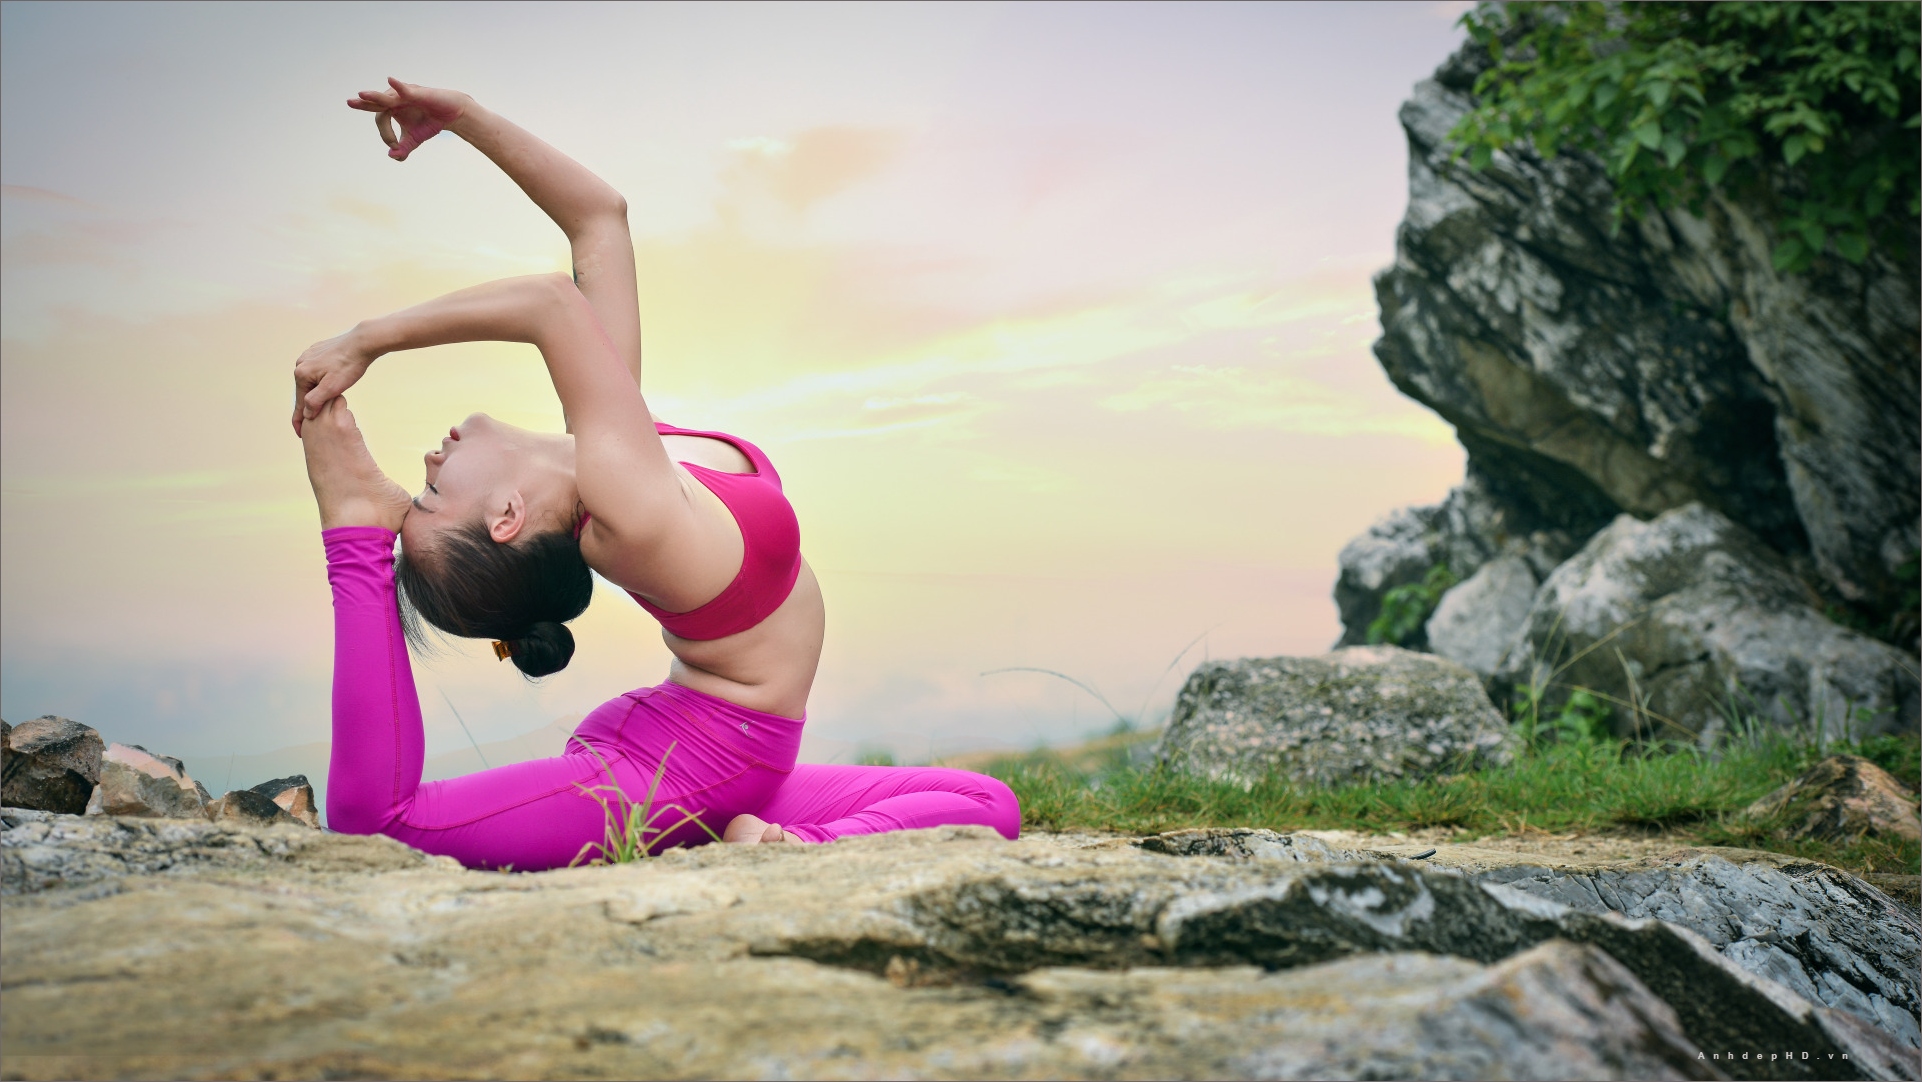 Những hình ảnh yoga đẹp sẽ khiến bạn thực sự mong muốn thử tập luyện yoga ngay lập tức. Từ các tư thế đơn giản cho đến những động tác phức tạp, tất cả đều được thể hiện đẹp đẽ và khéo léo. Xem ngay để cảm nhận sự đẹp của yoga.